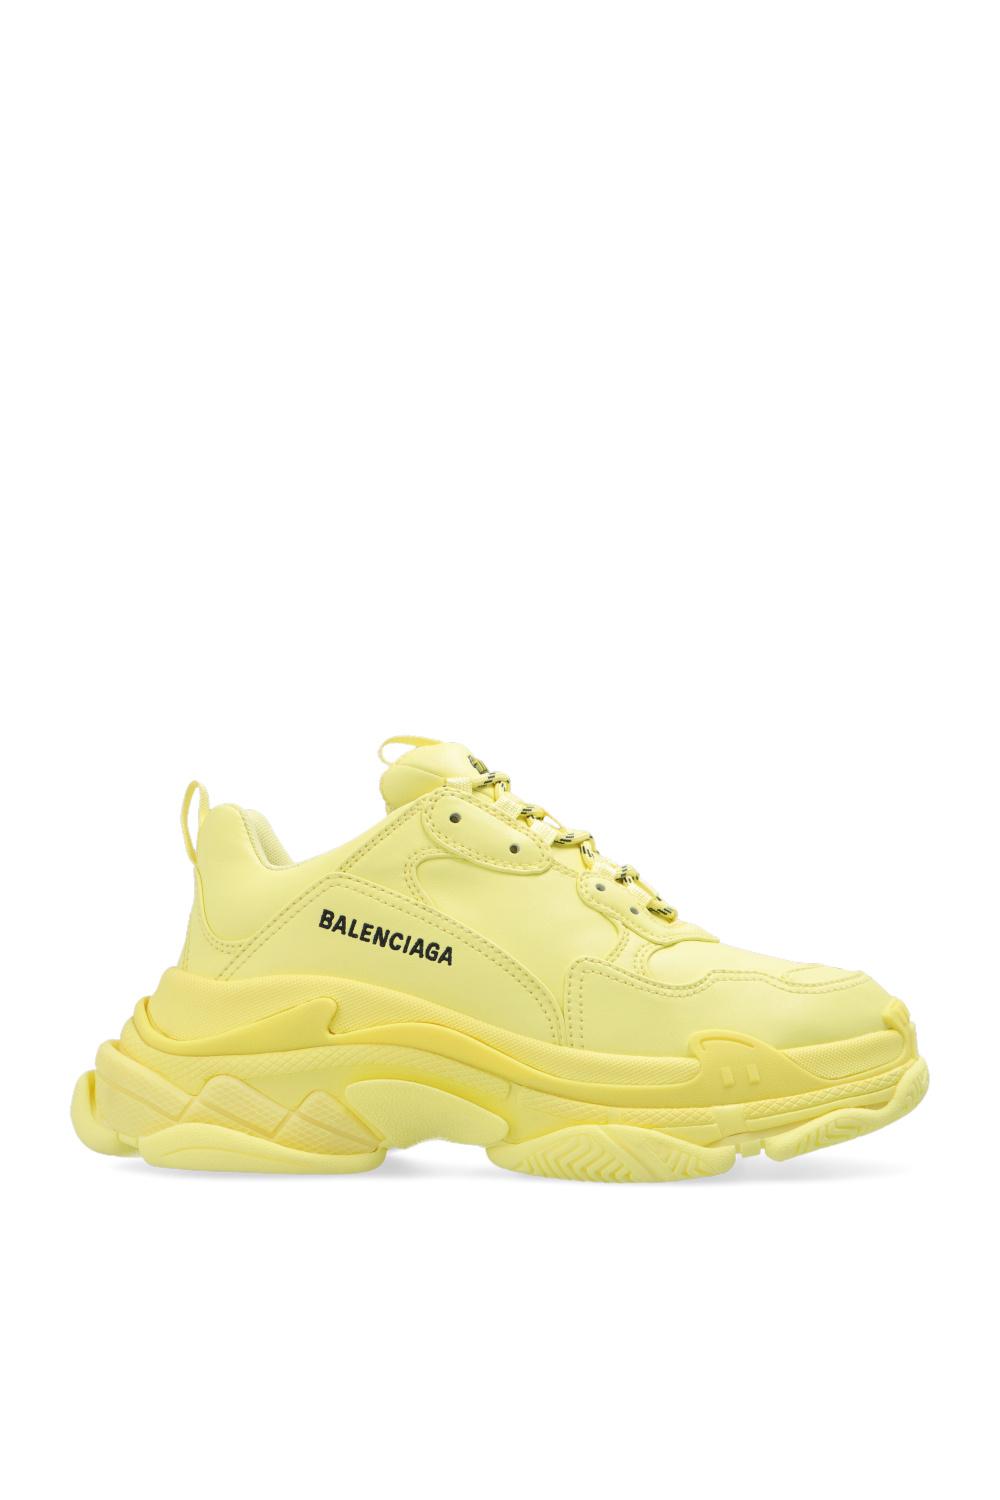 Balenciaga 'triple S' Sneakers in Yellow | Lyst